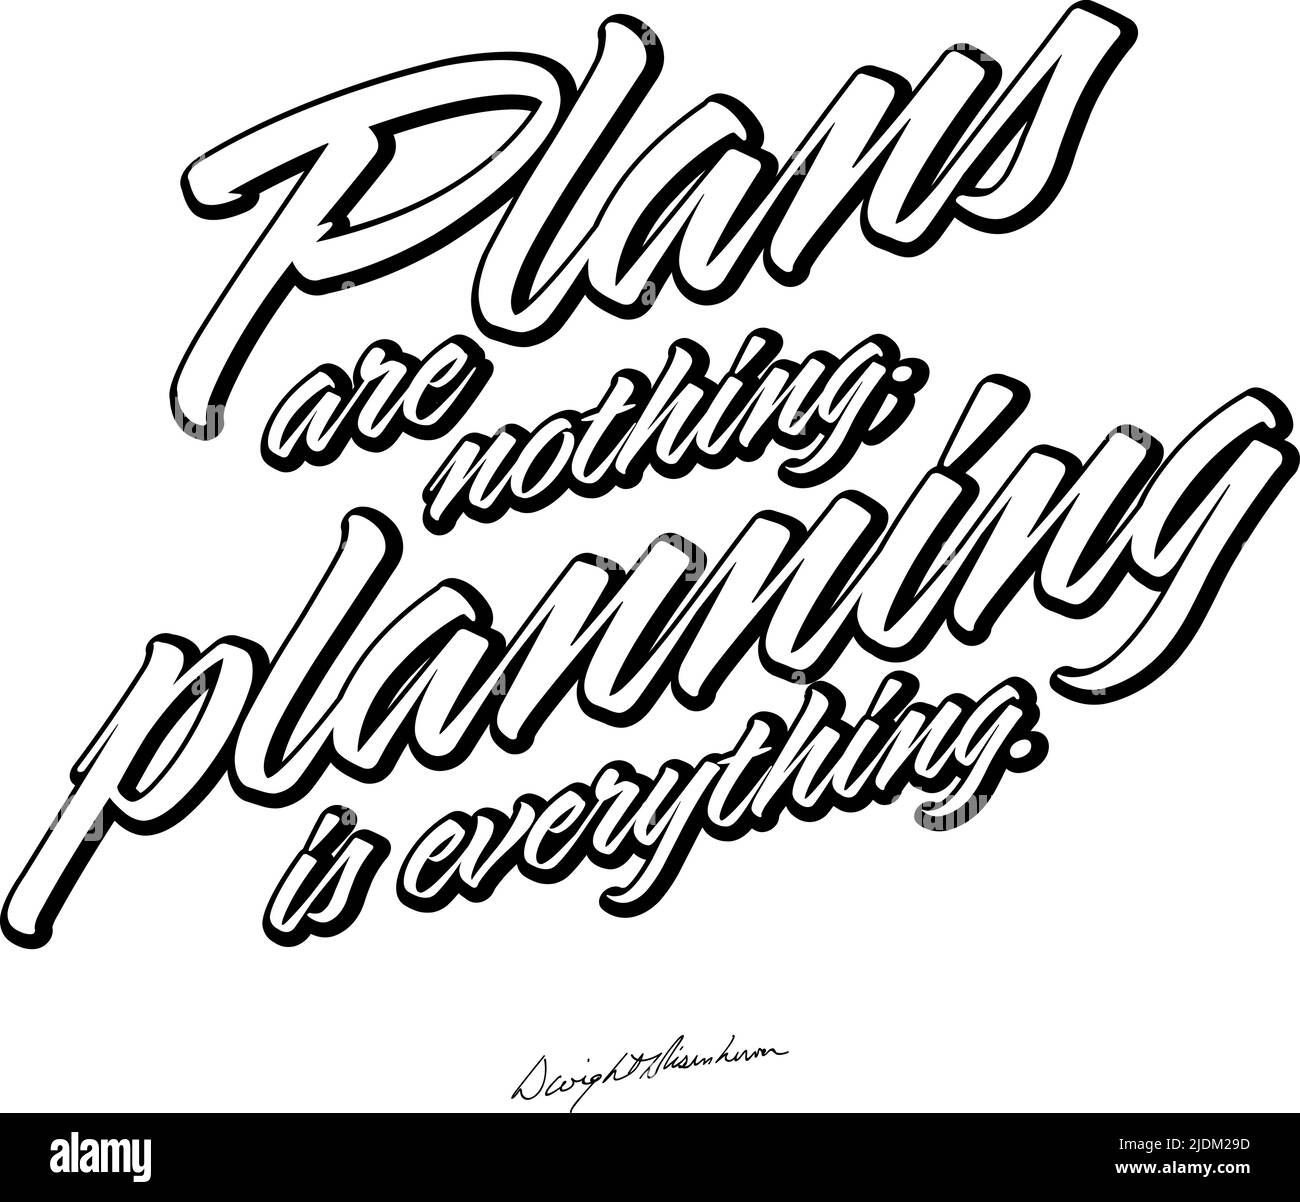 I piani non sono niente; la pianificazione è tutto. Scritta in bianco e nero Vector art per la stampa. Illustrazione Vettoriale